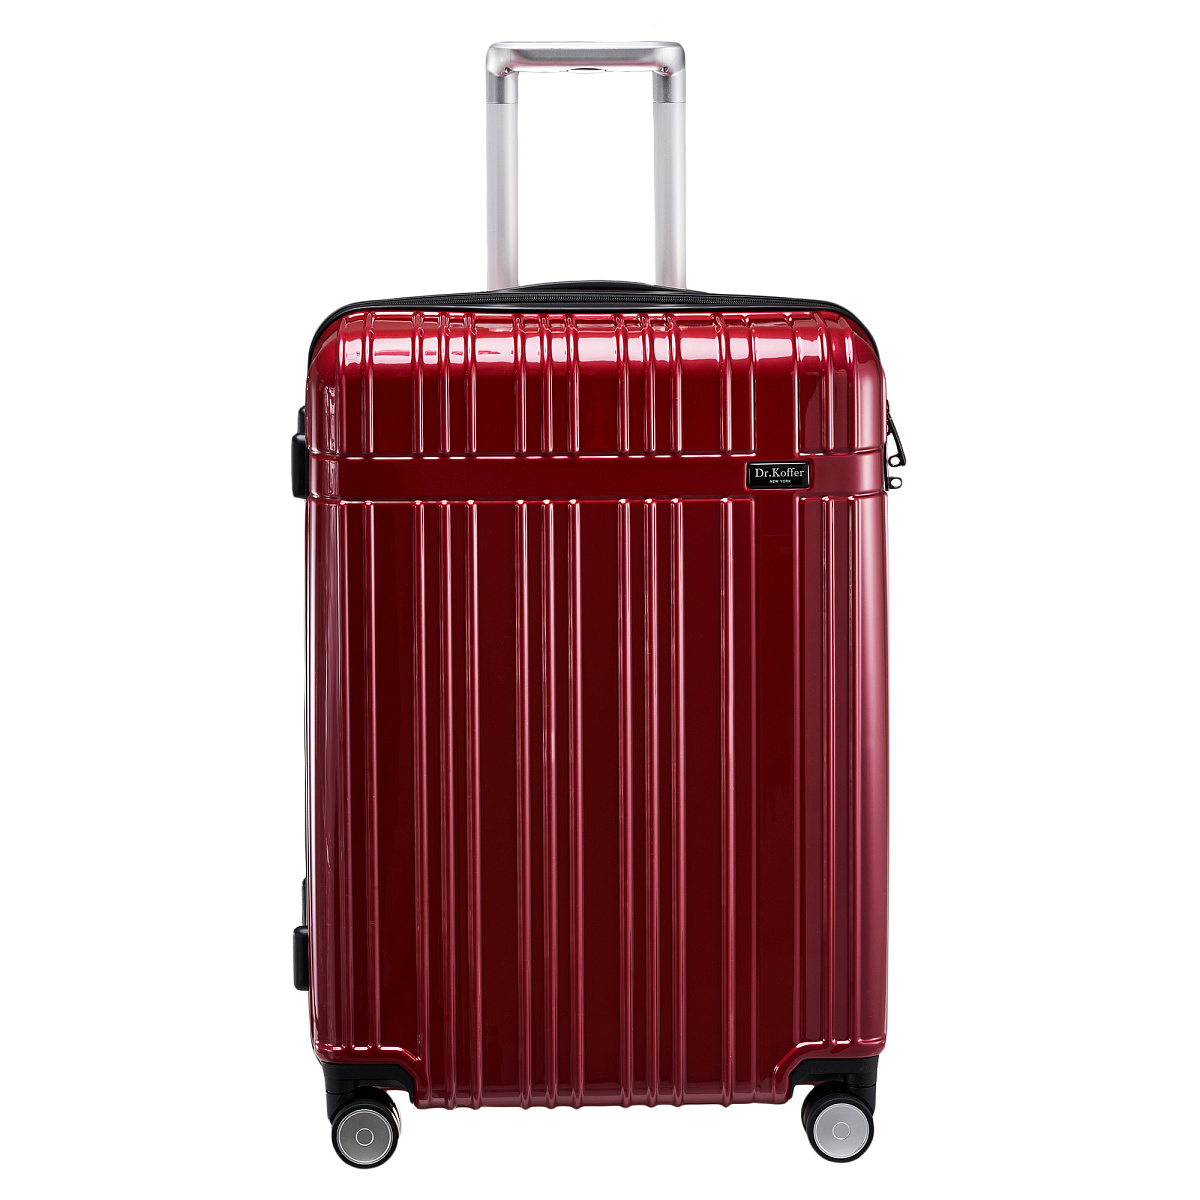 Др.Коффер L101TC24-250-12 чемодан